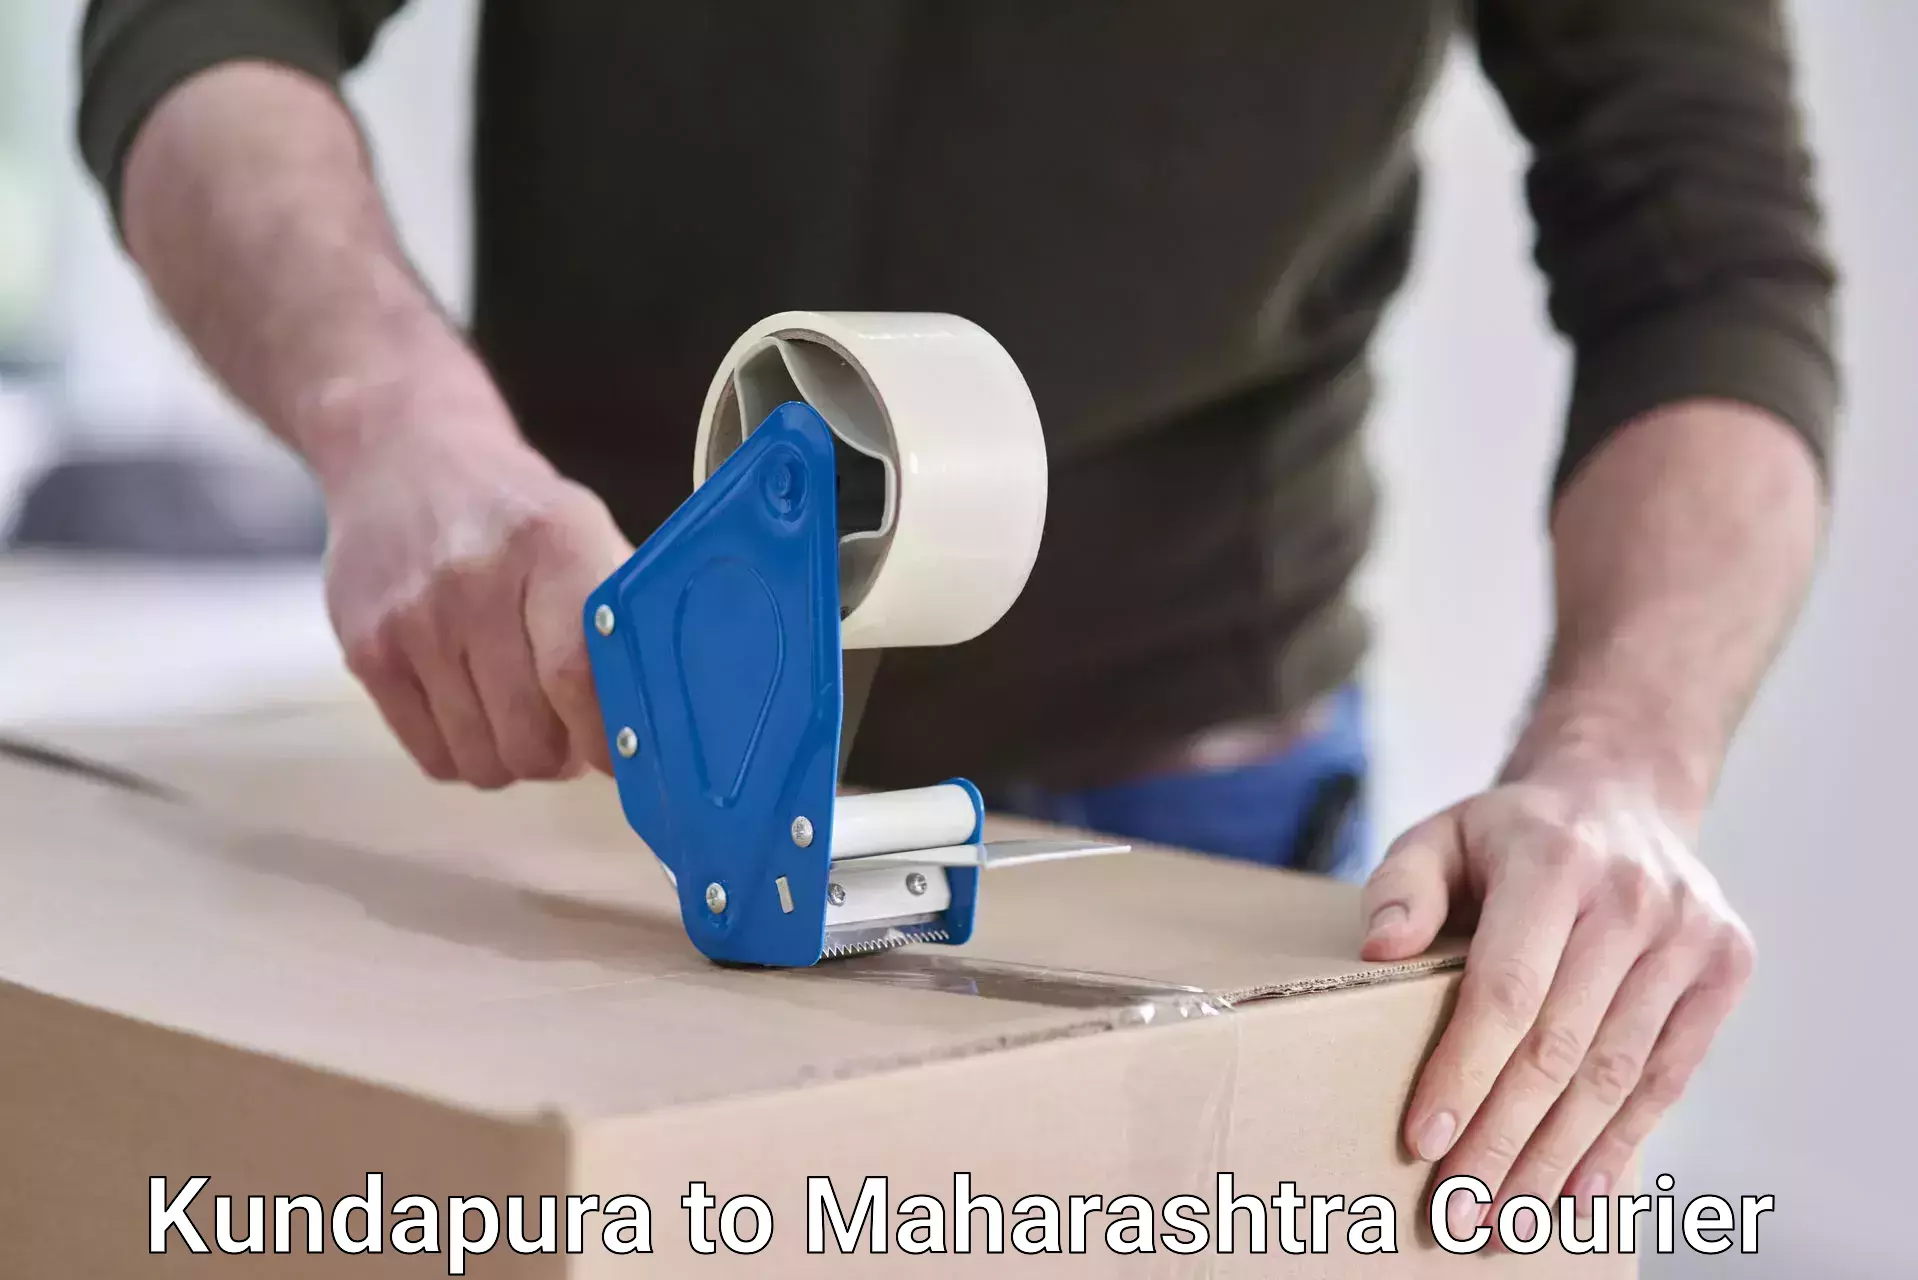 On-call courier service Kundapura to Maharashtra